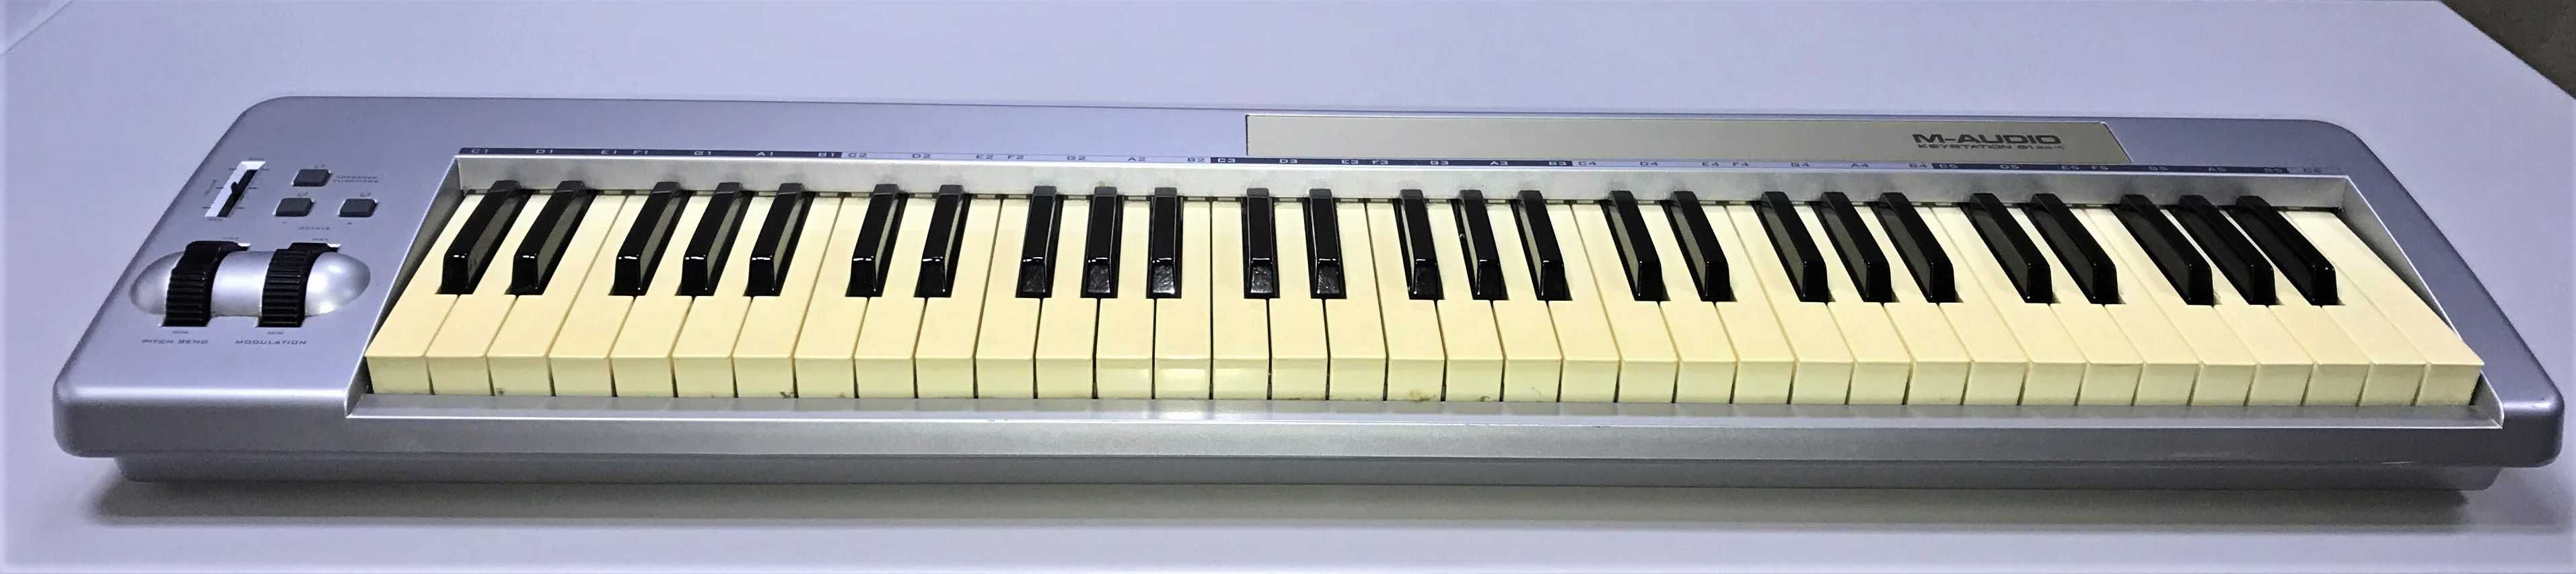 M-Audio Keystation 61 es міді клавіатура миди клавиатура/Обмін